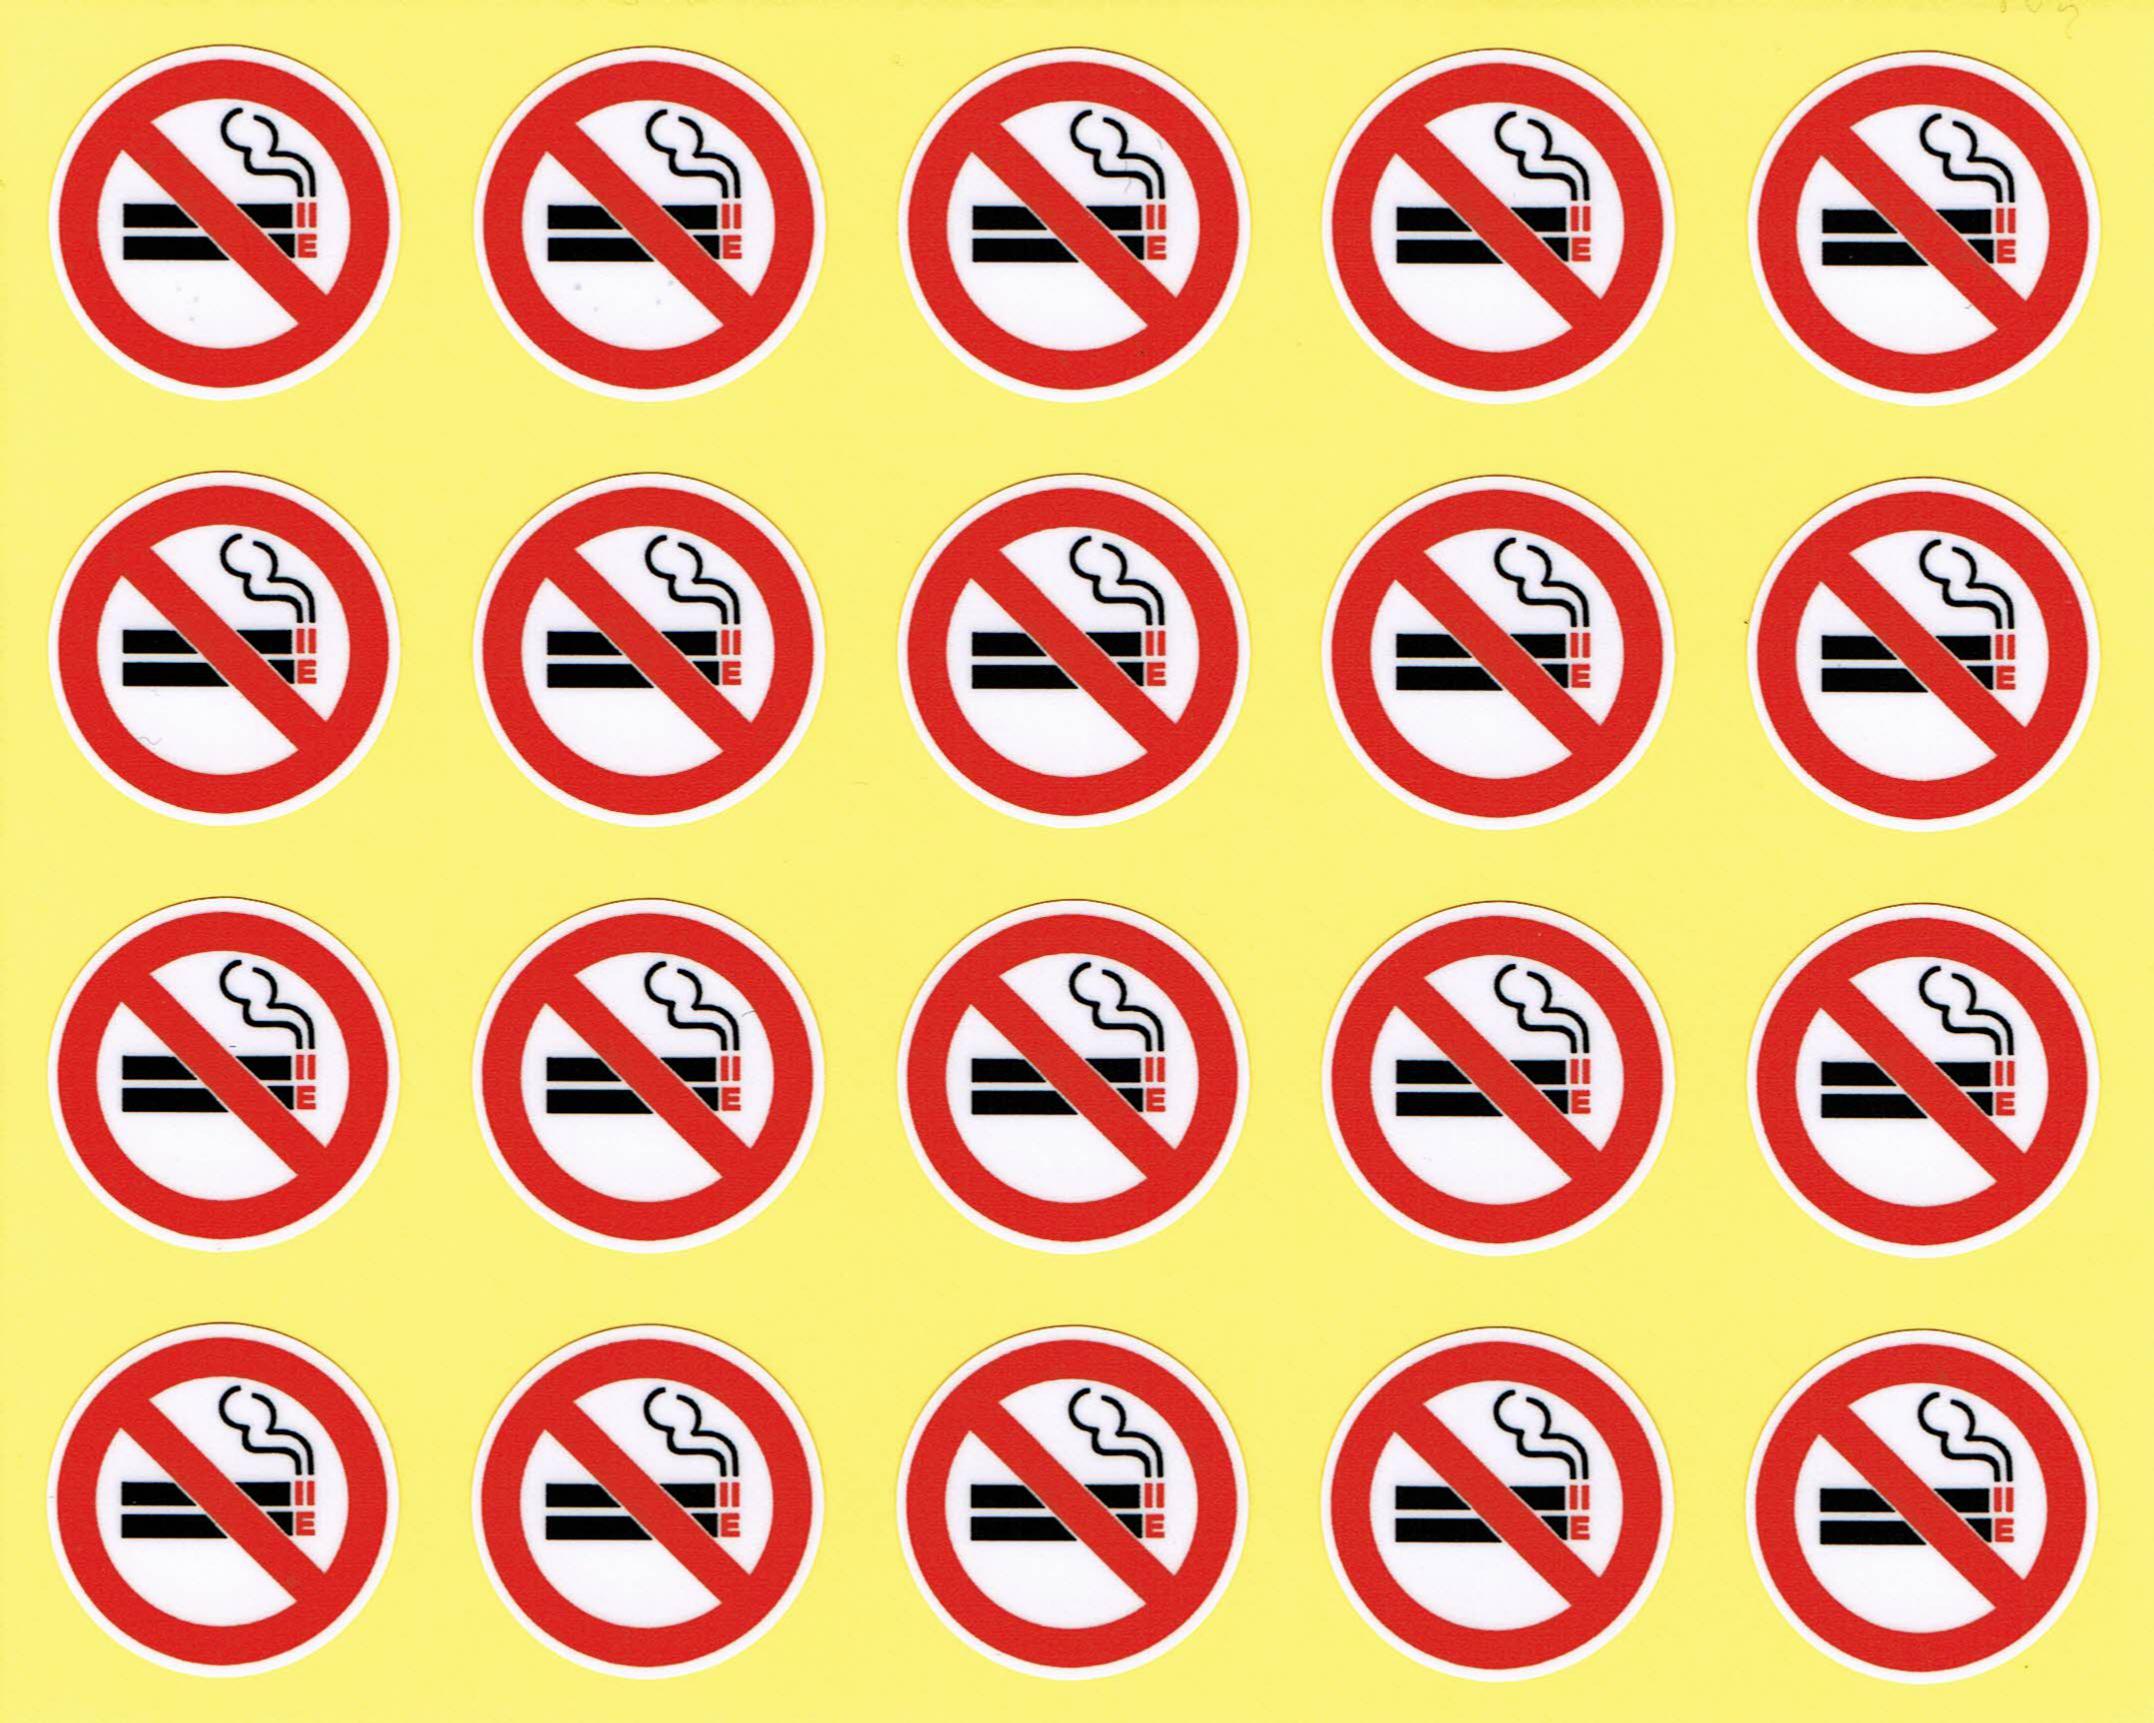 加熱式タバコ禁止も入れた 新 禁煙マーク シール 完成 頒布しています タバコ問題首都圏協議会 公益社団法人 受動喫煙撲滅機構